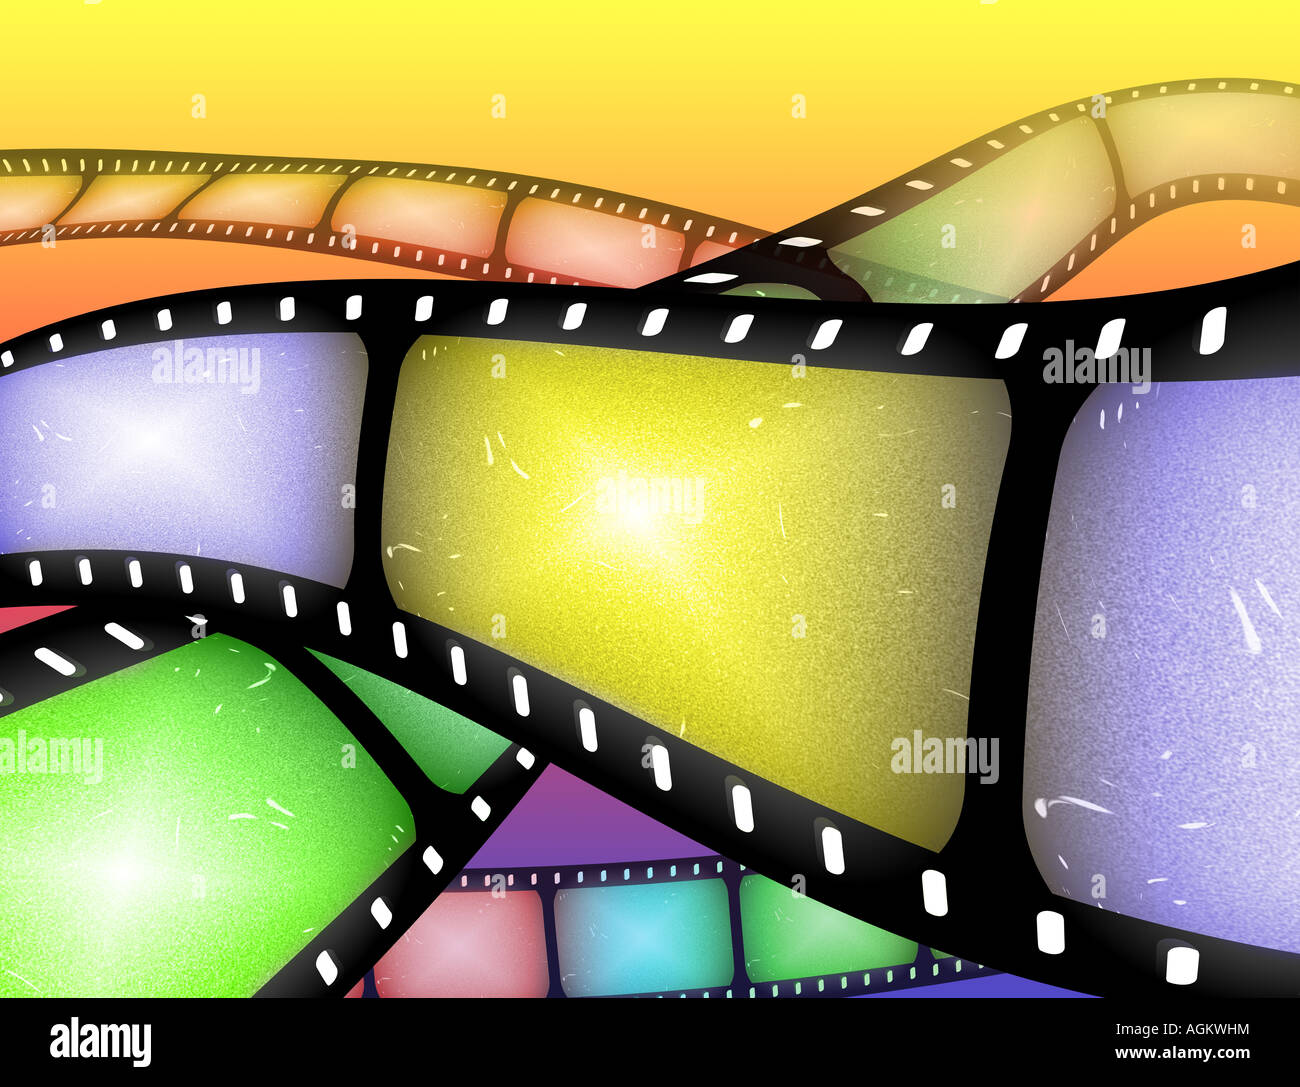 abstraktes Bild von Rollen der Filmstreifen oder Film-Rolle Stockfotografie  - Alamy